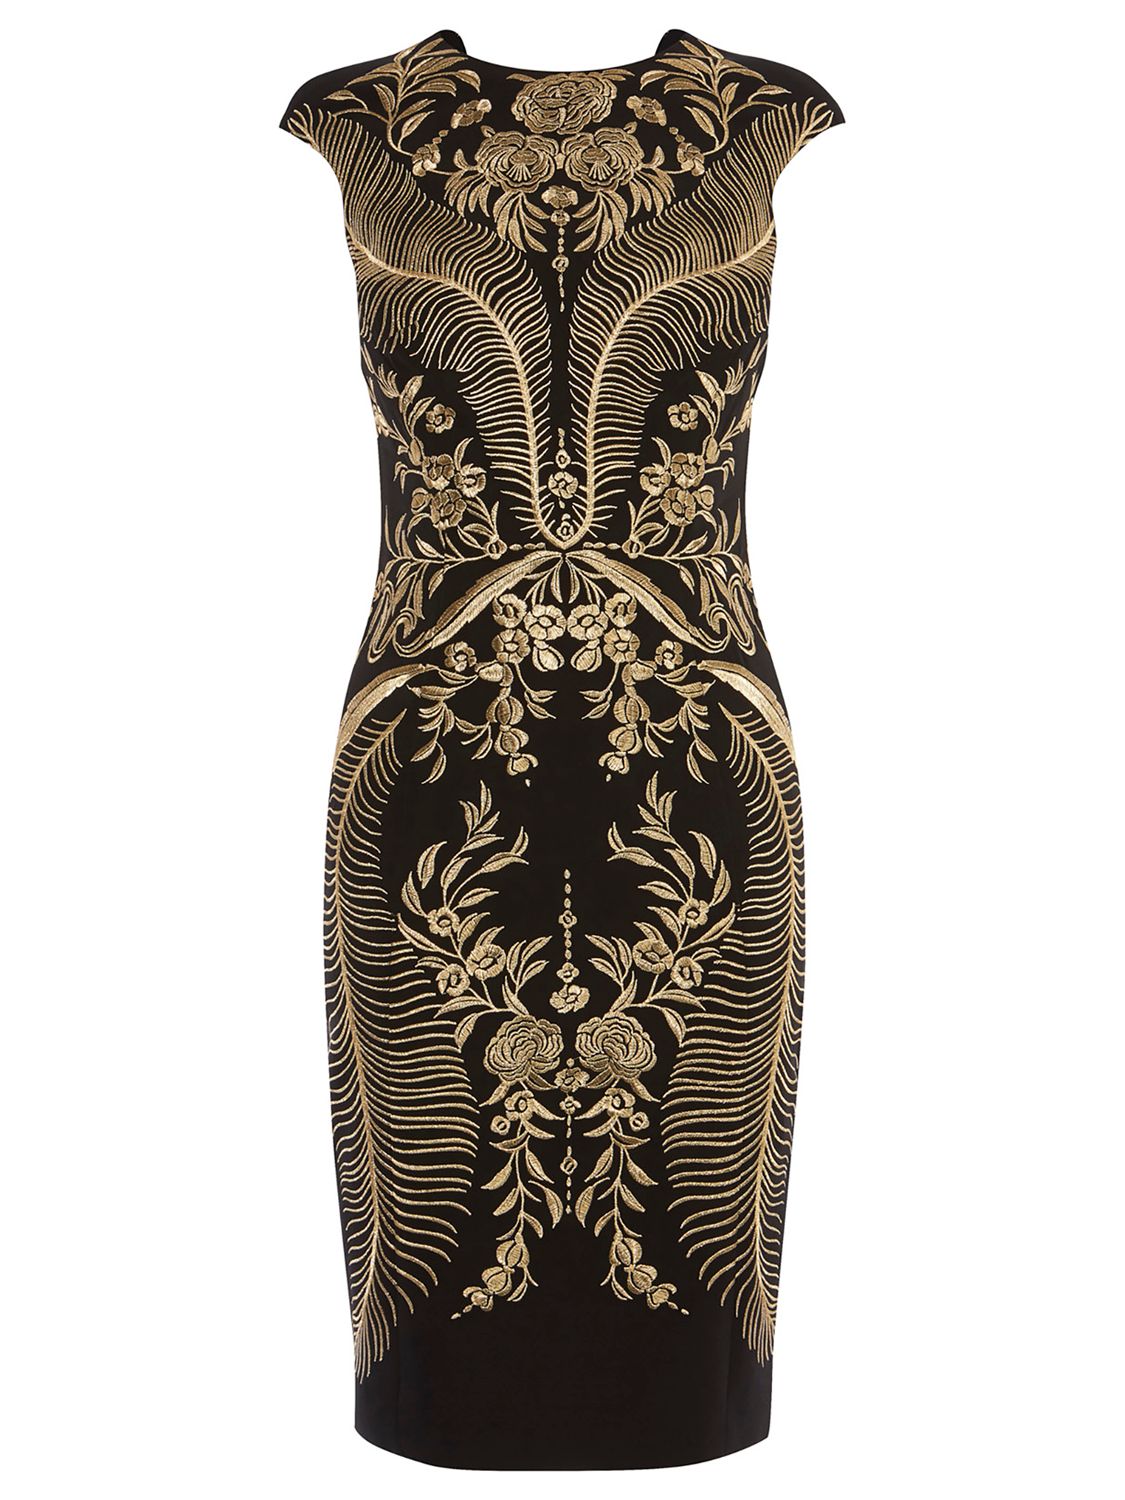 Karen Millen Oriental Embroidered Dress, Black/Multi